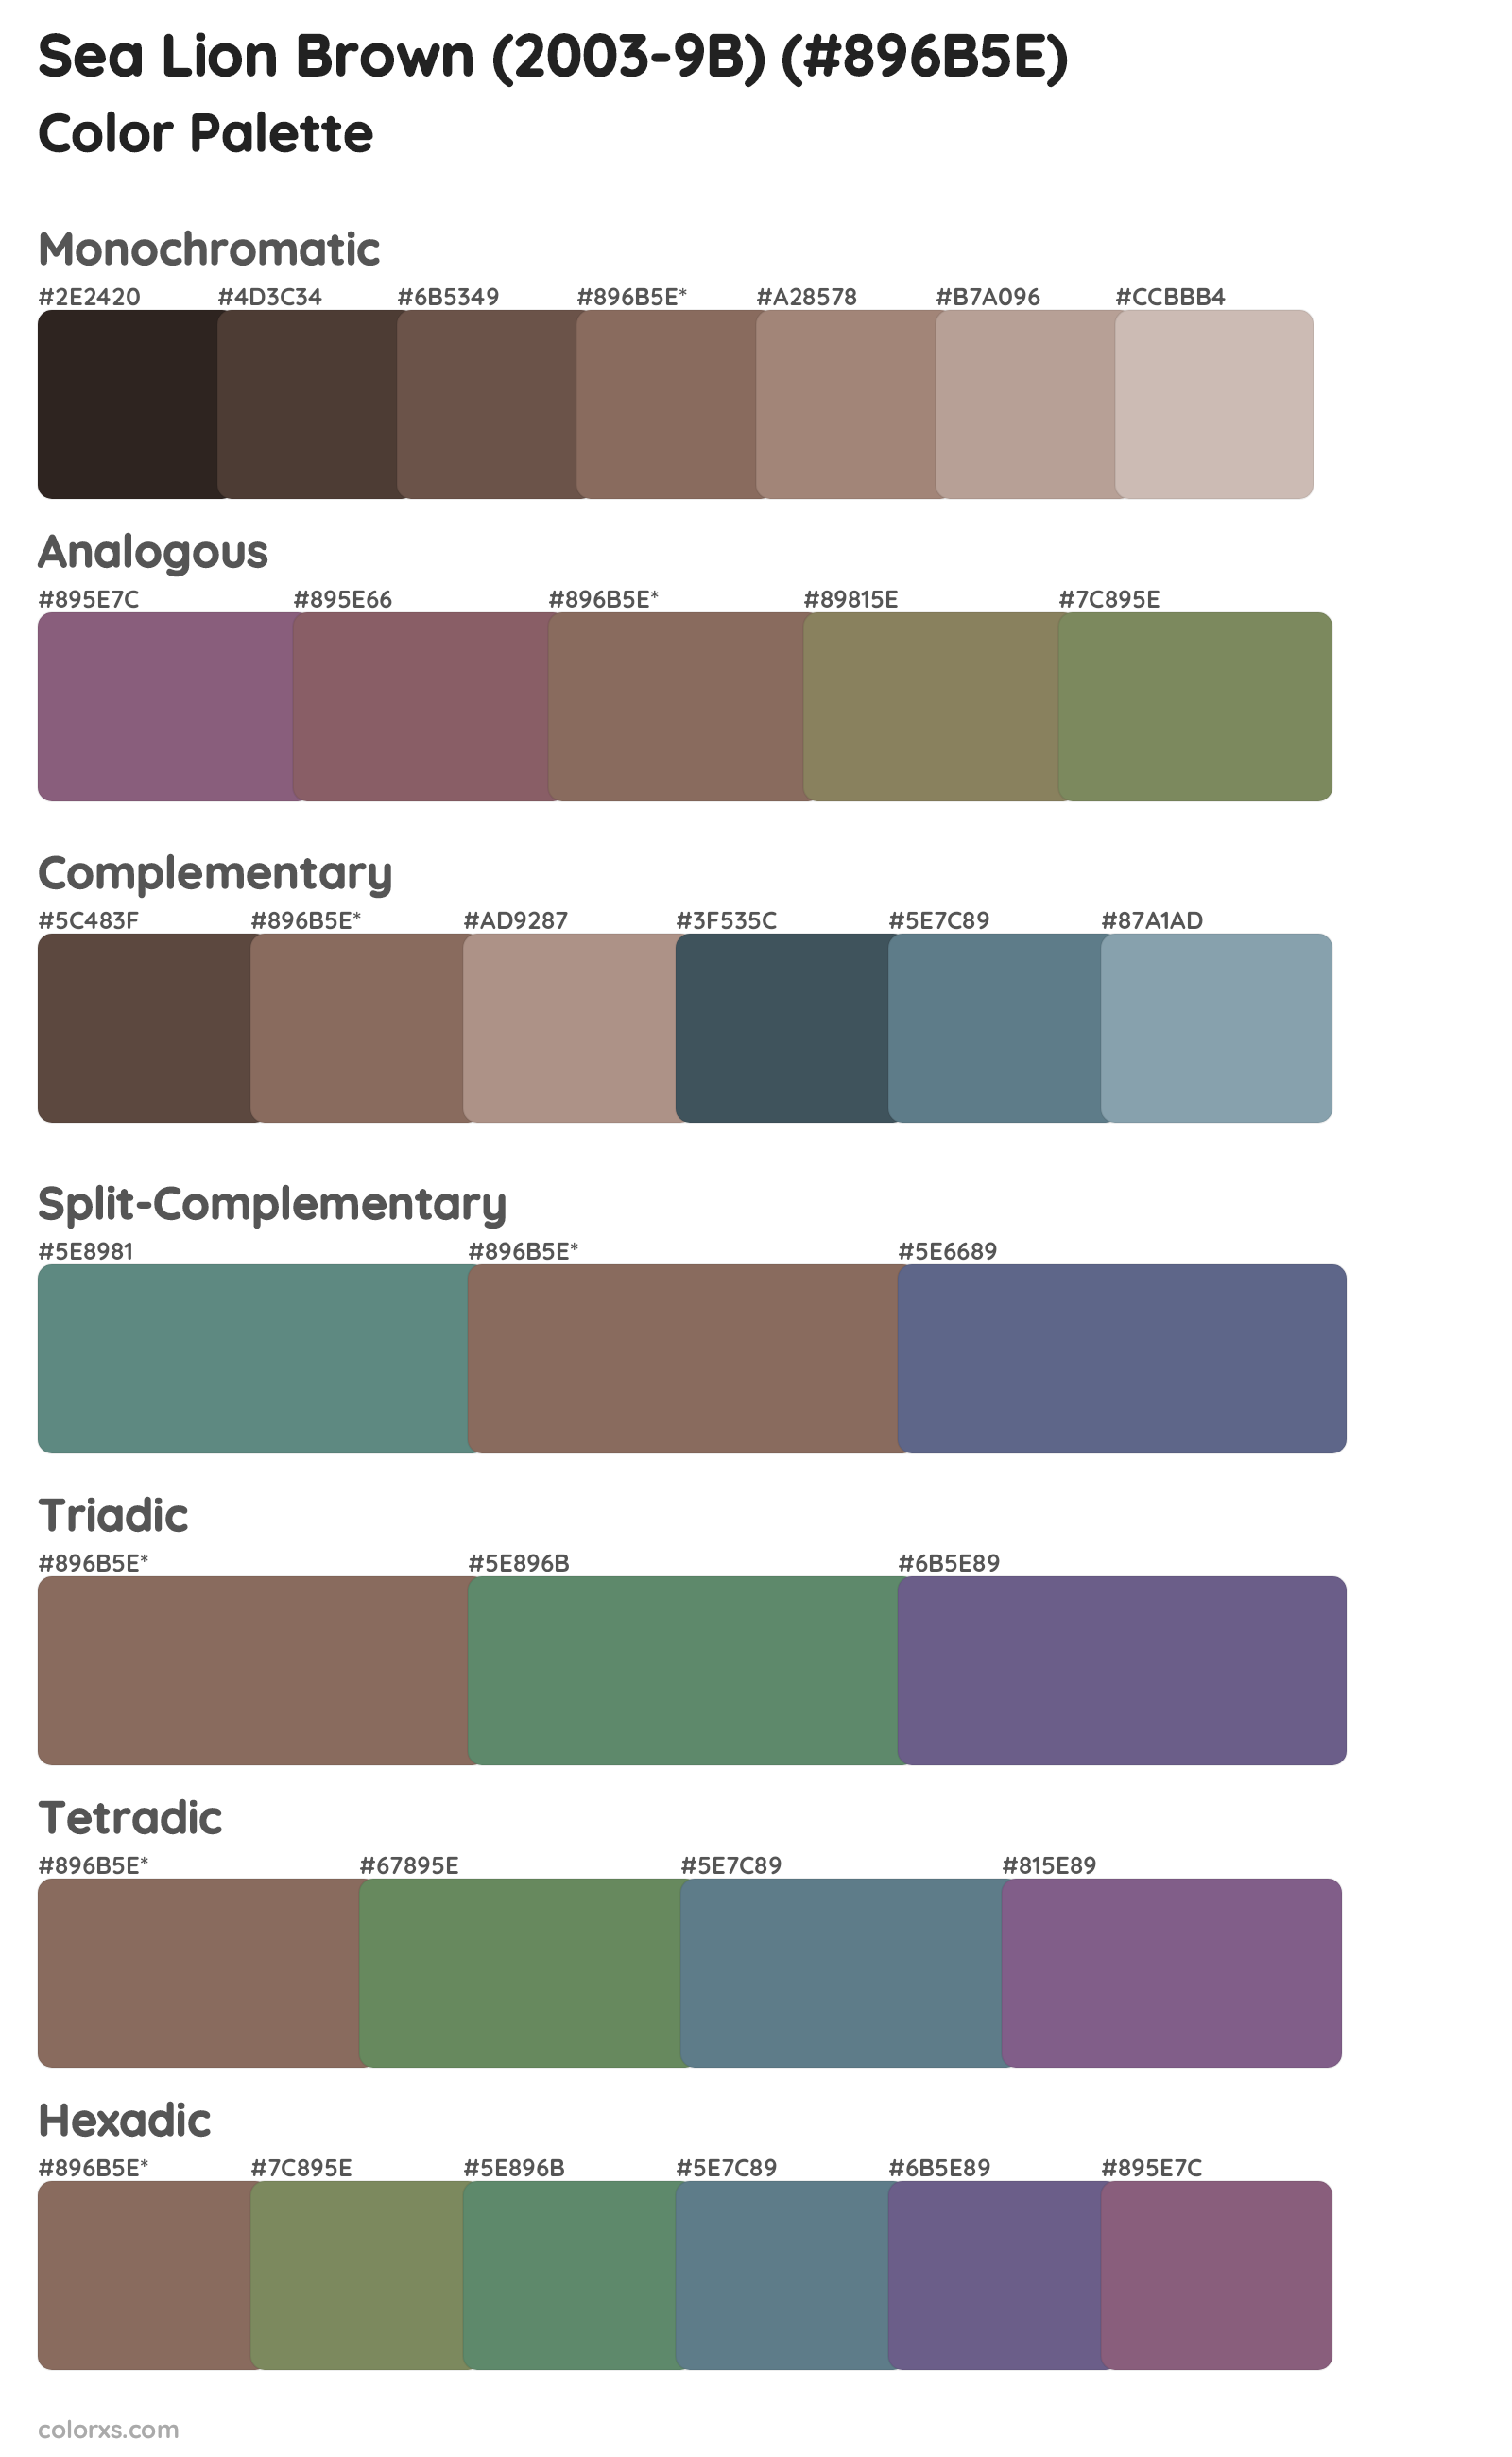 Sea Lion Brown (2003-9B) Color Scheme Palettes